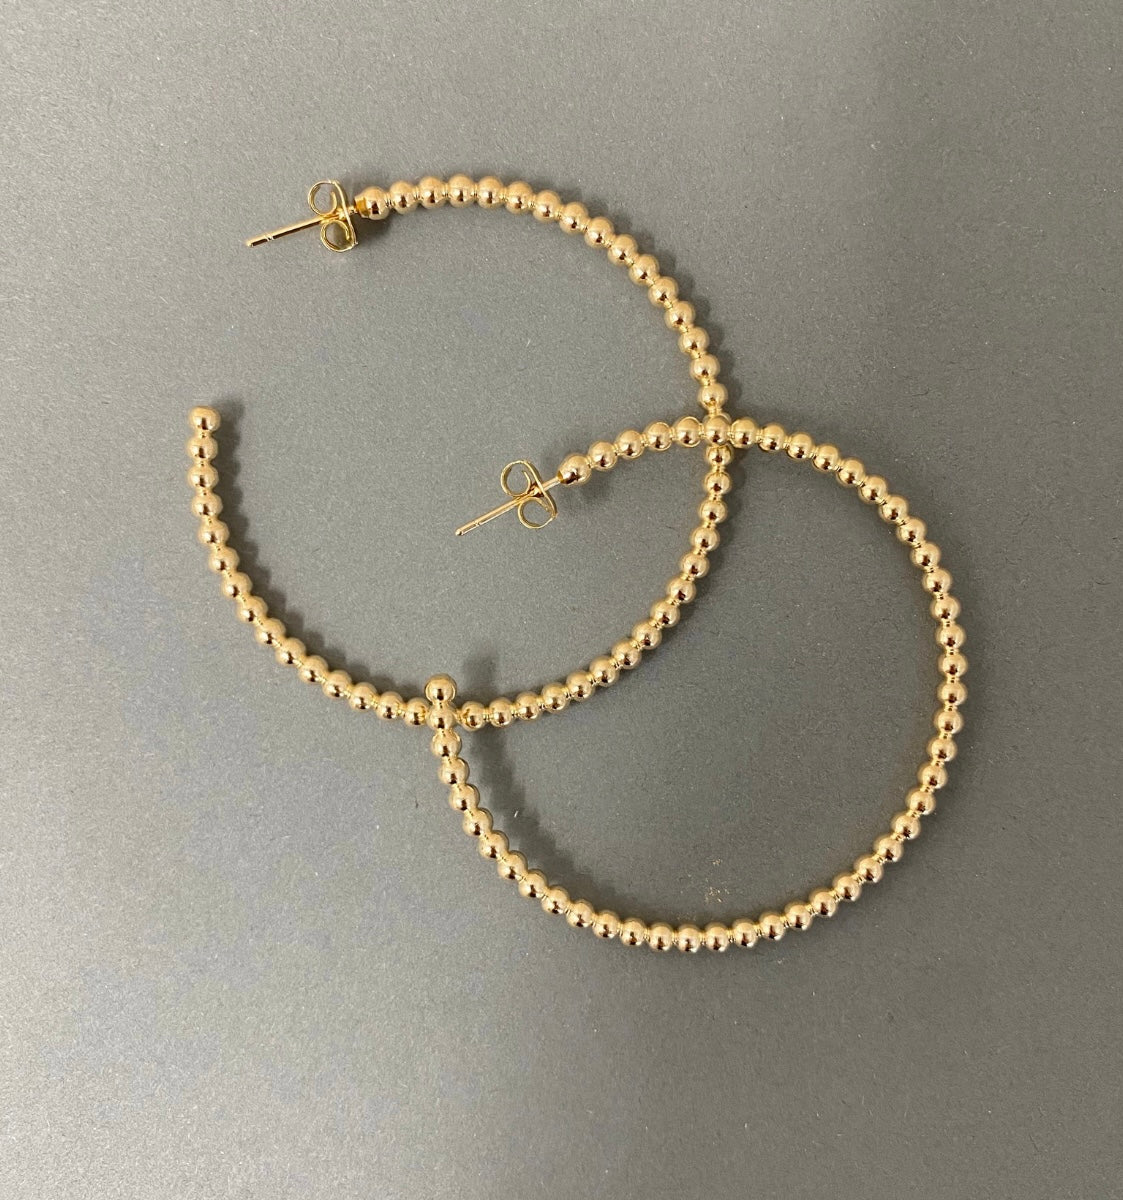 Gold Beaded Hoop Earrings - Love Beach Beads